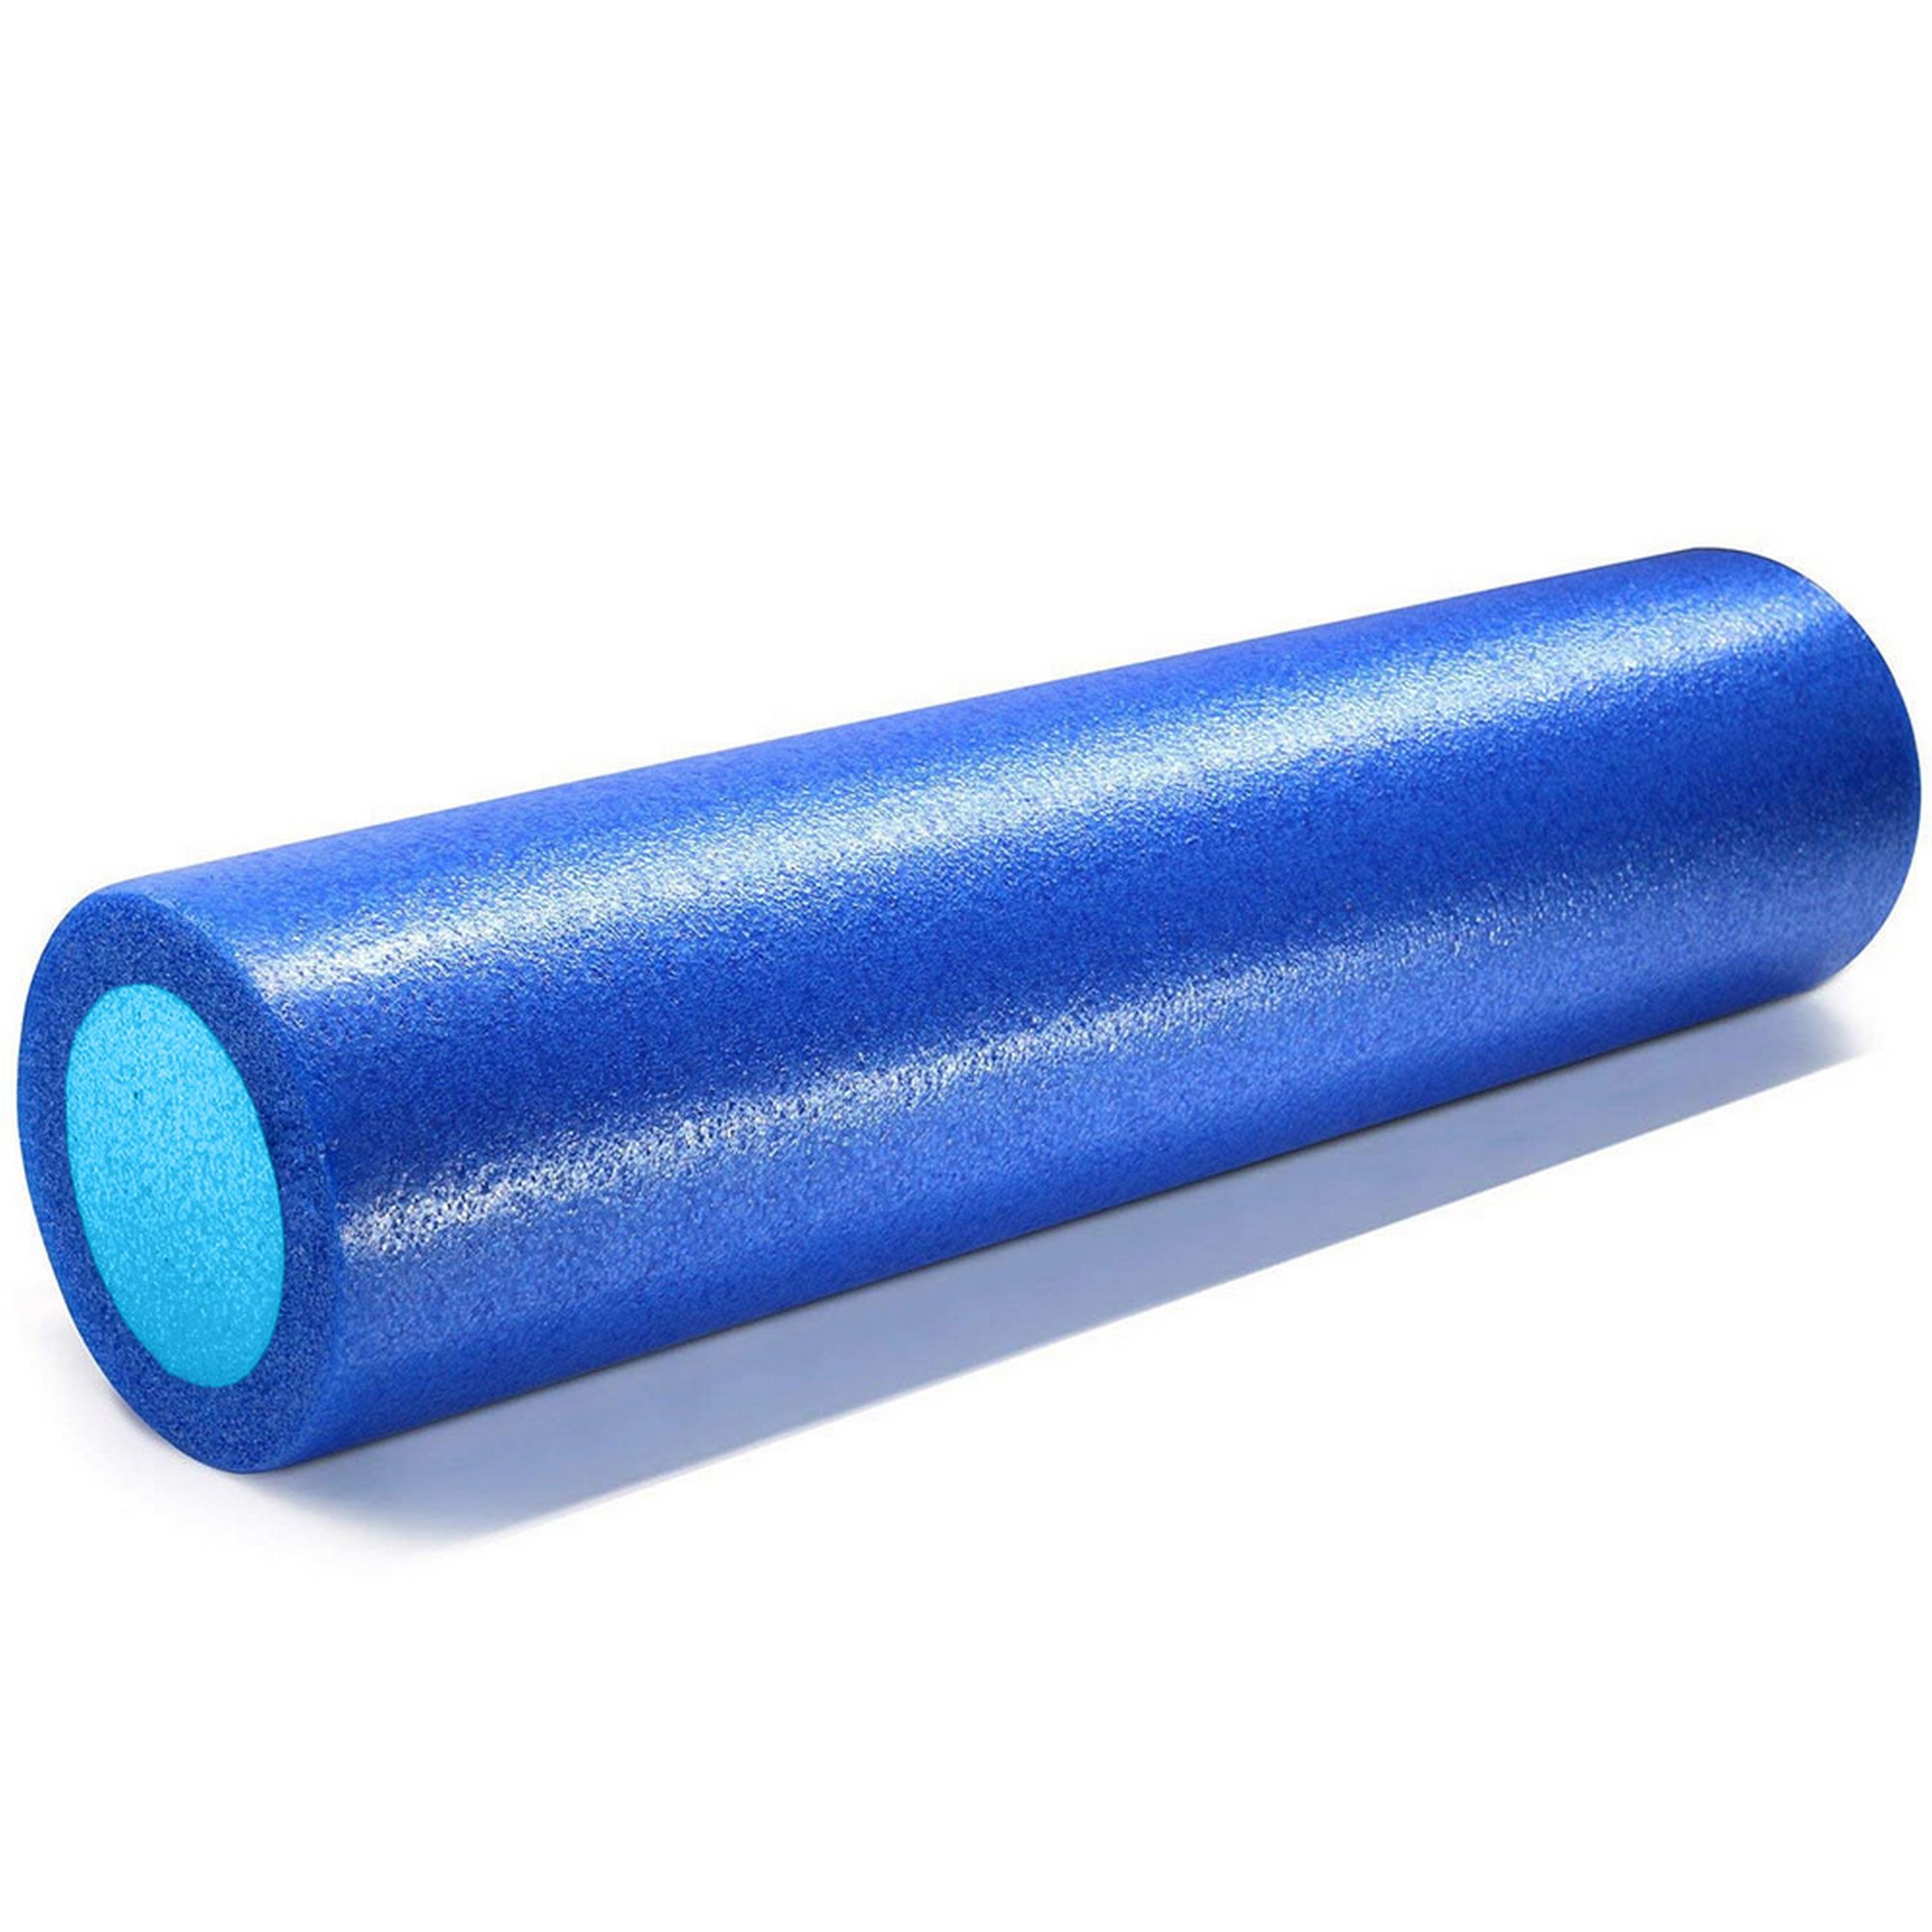 Ролик для йоги полнотелый 2-х цветный, 45х15x15см Sportex PEF45-A синий\голубой